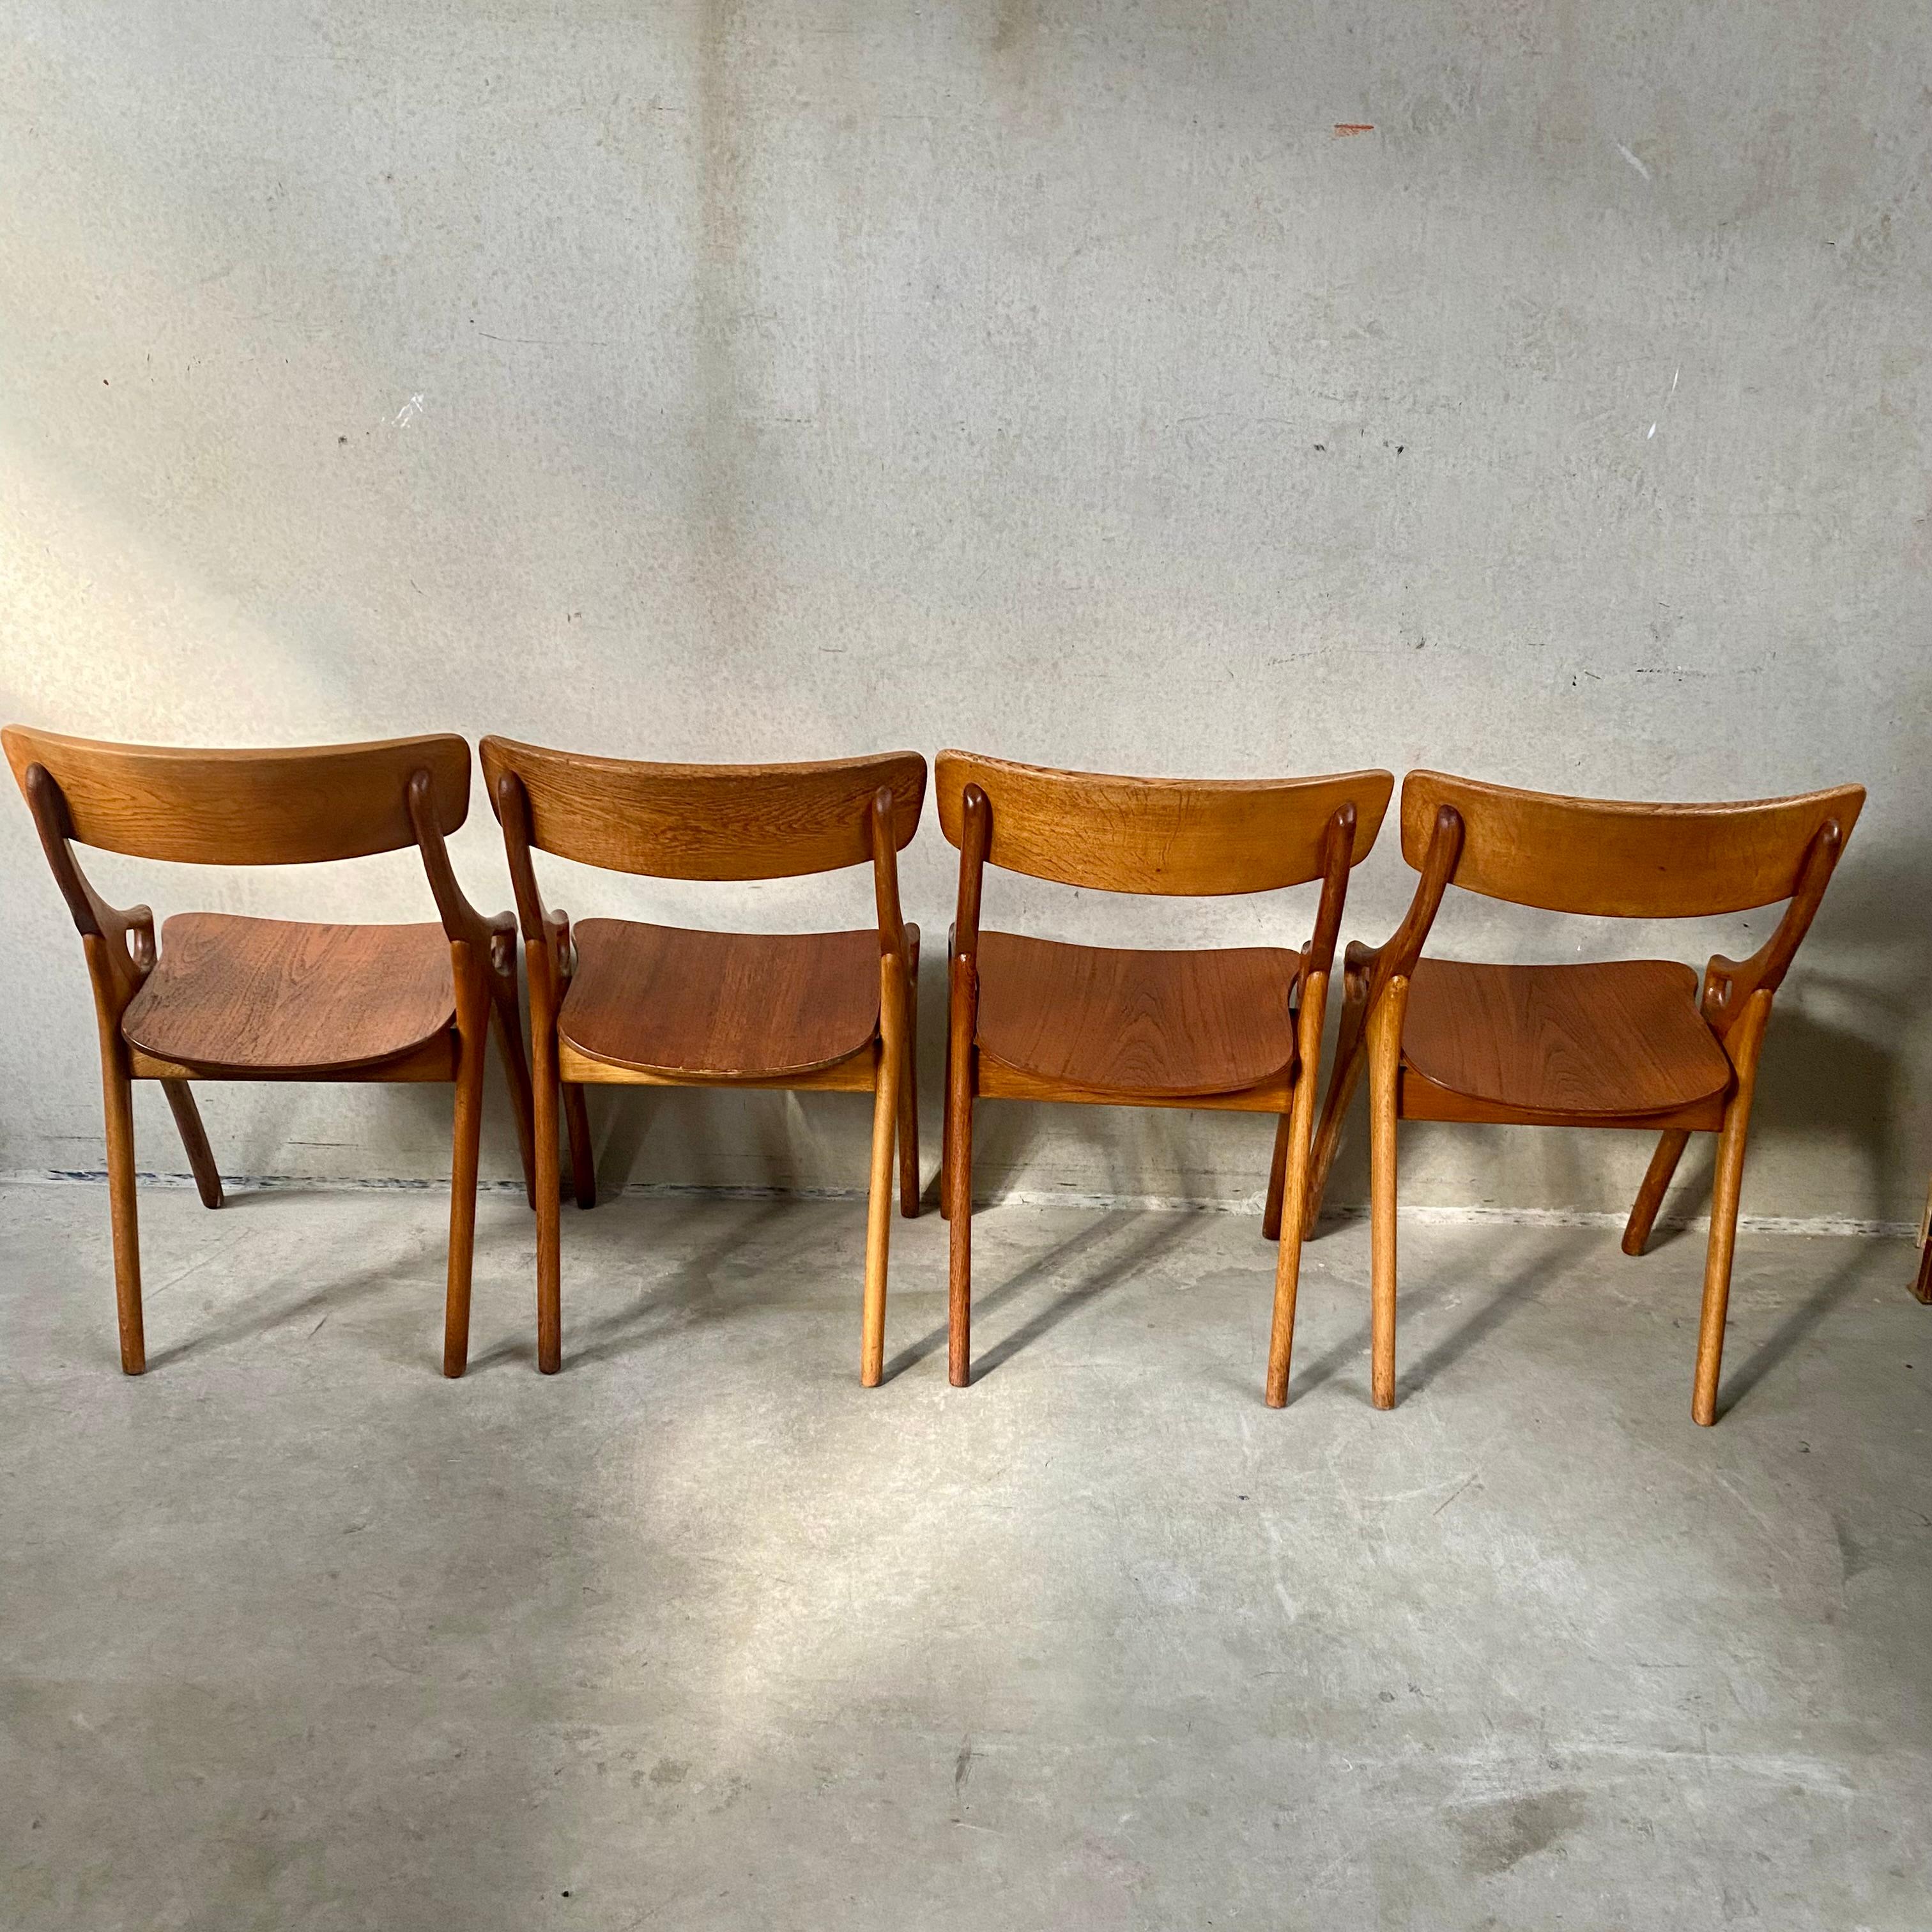 4 Rustic Oak Arne Hovmand Olsen Dining Chairs for Mogens Kold Mobelfabrik 1950 For Sale 4